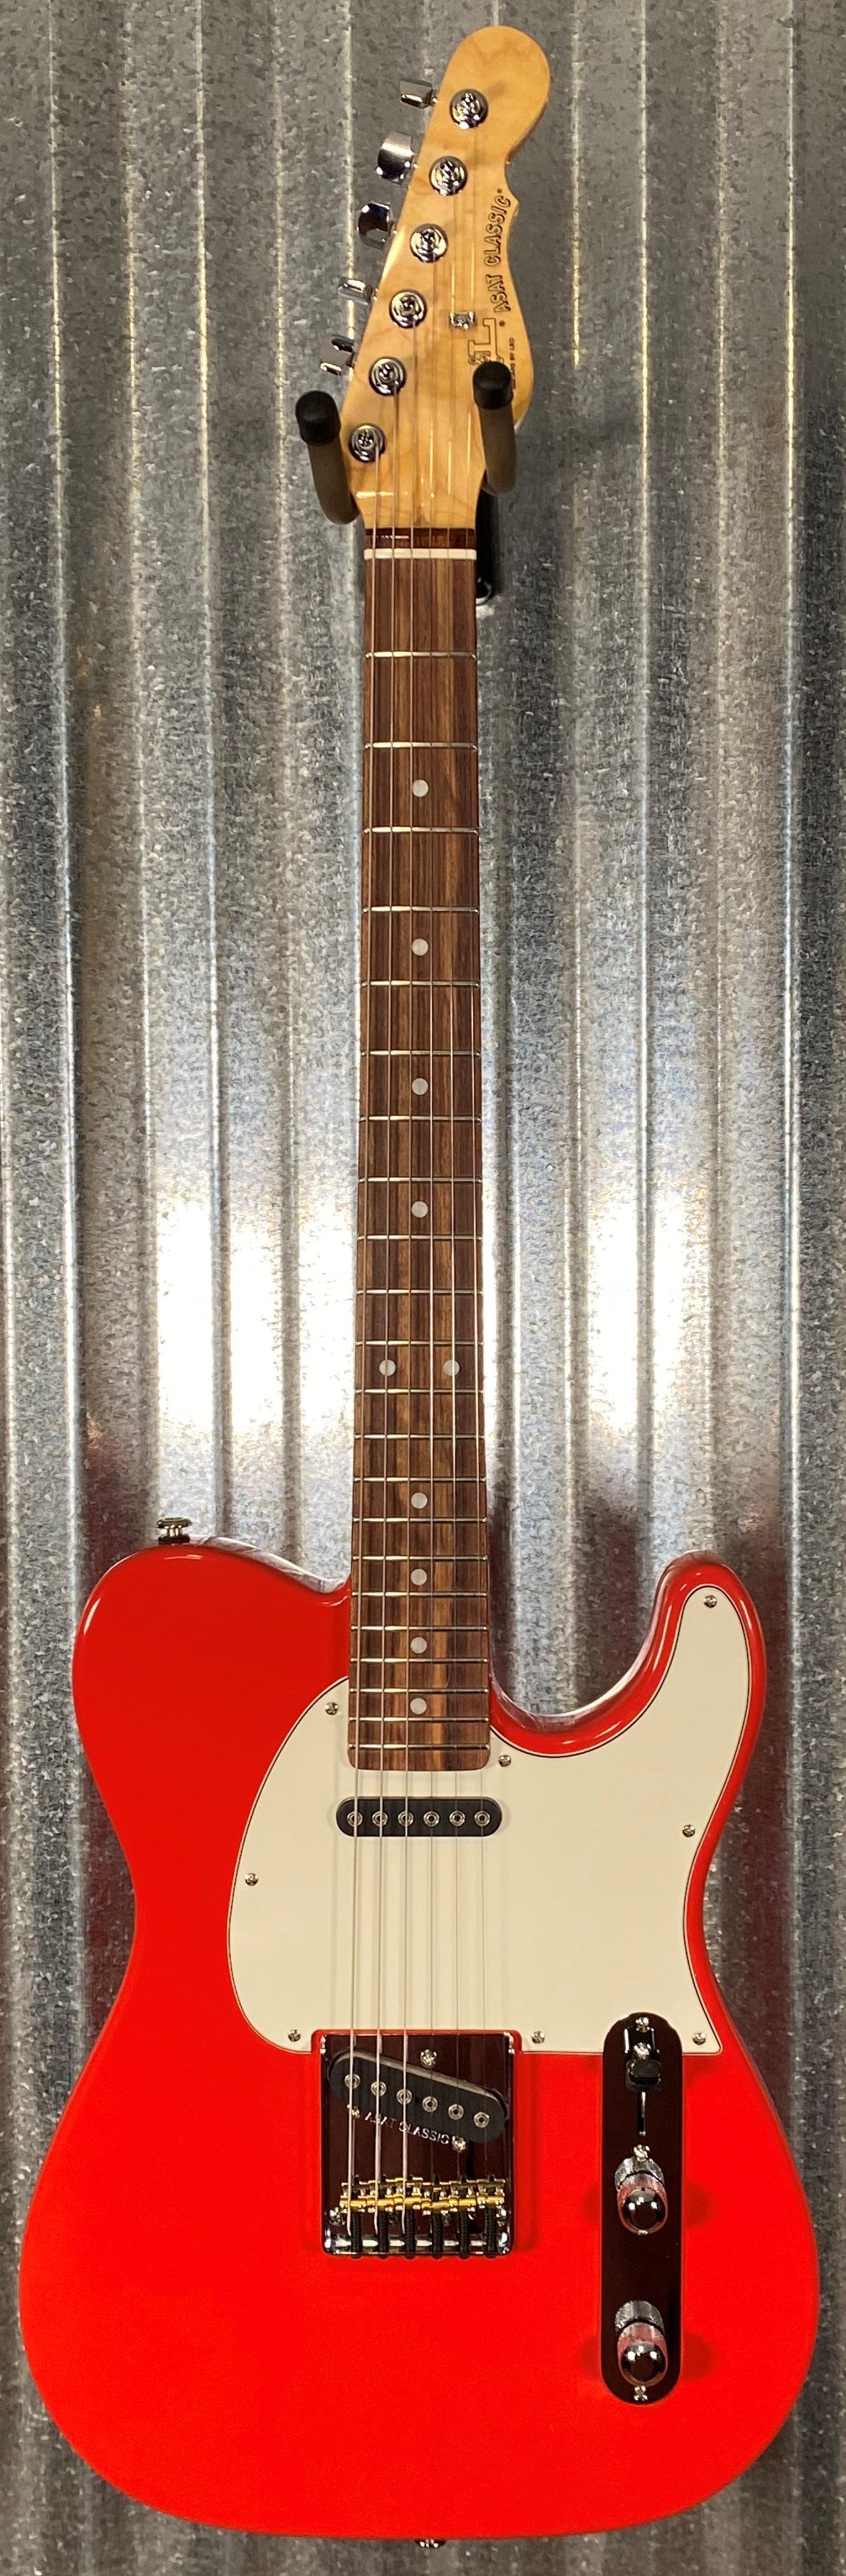 G&L USA Fullerton Deluxe ASAT Classic Fullerton Red Guitar & Bag Blem #0126